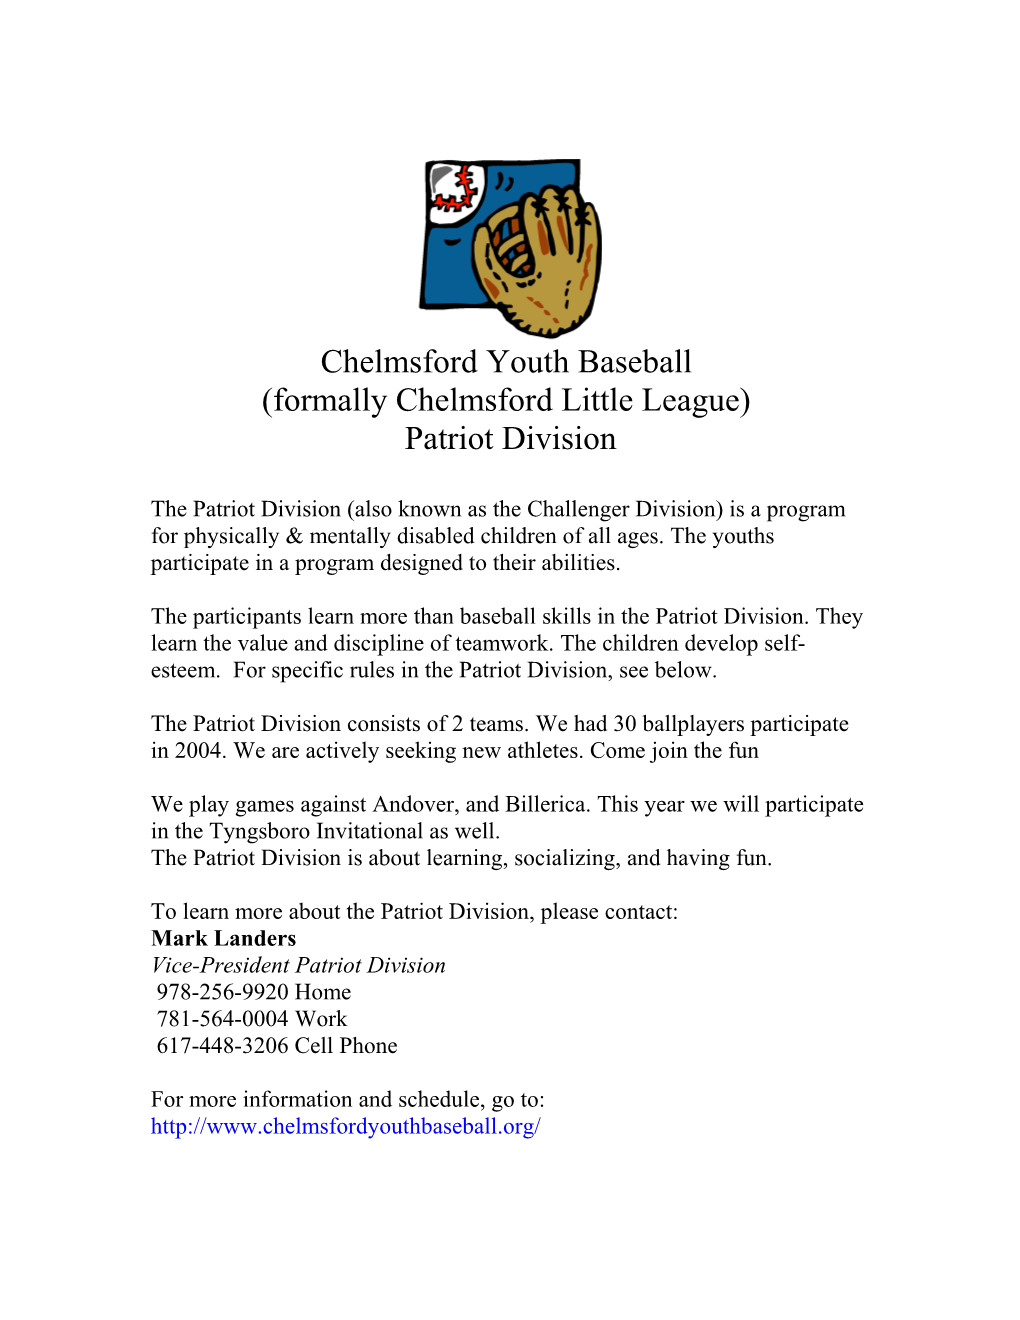 Chelmsford Little League Patriot Division